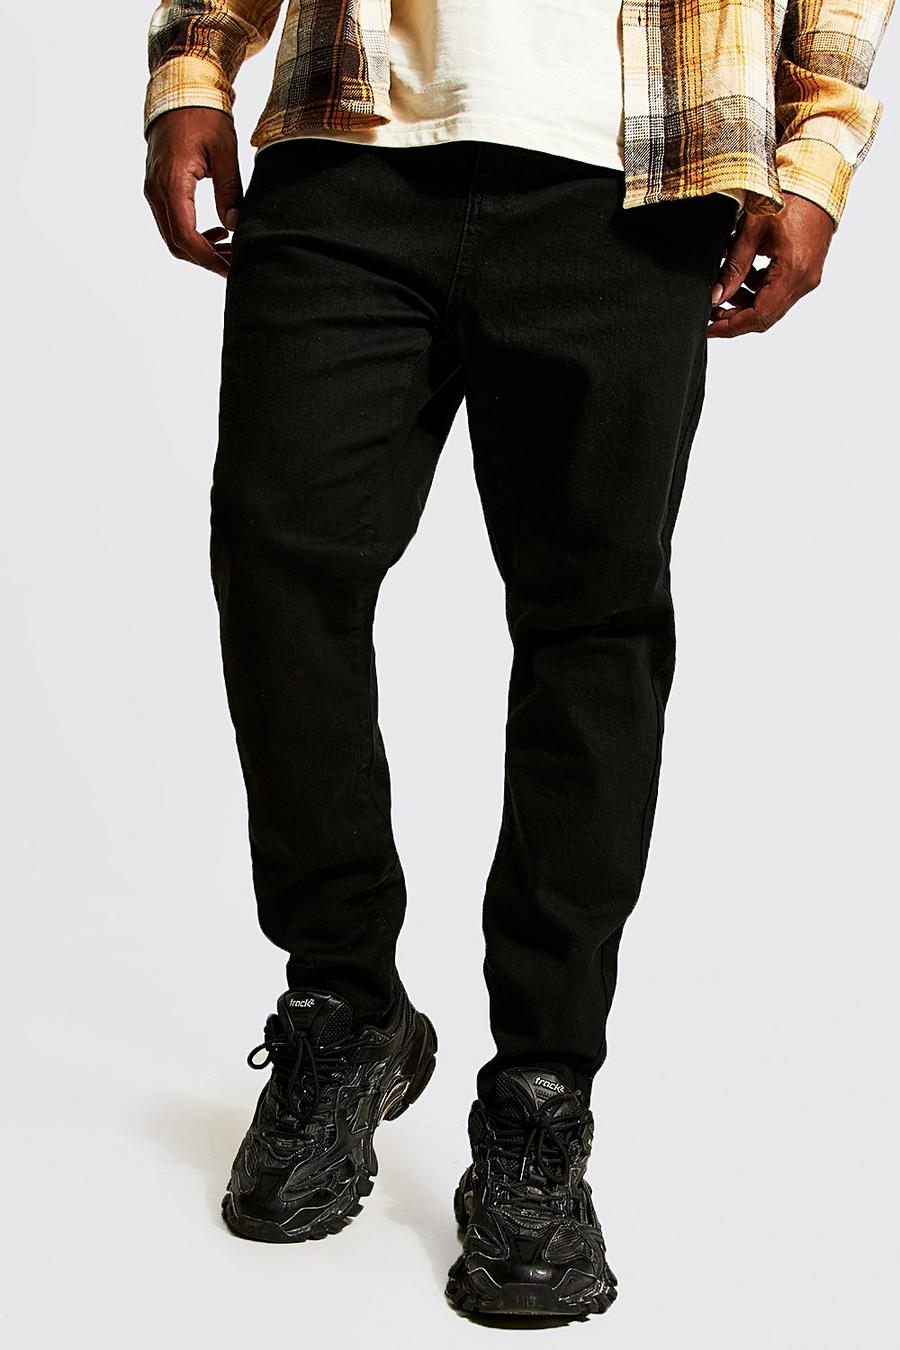 שחור אמיתי סופר סקיני ג'ינס בשילוב פוליאסטר ממוחזר, מידות גדולות